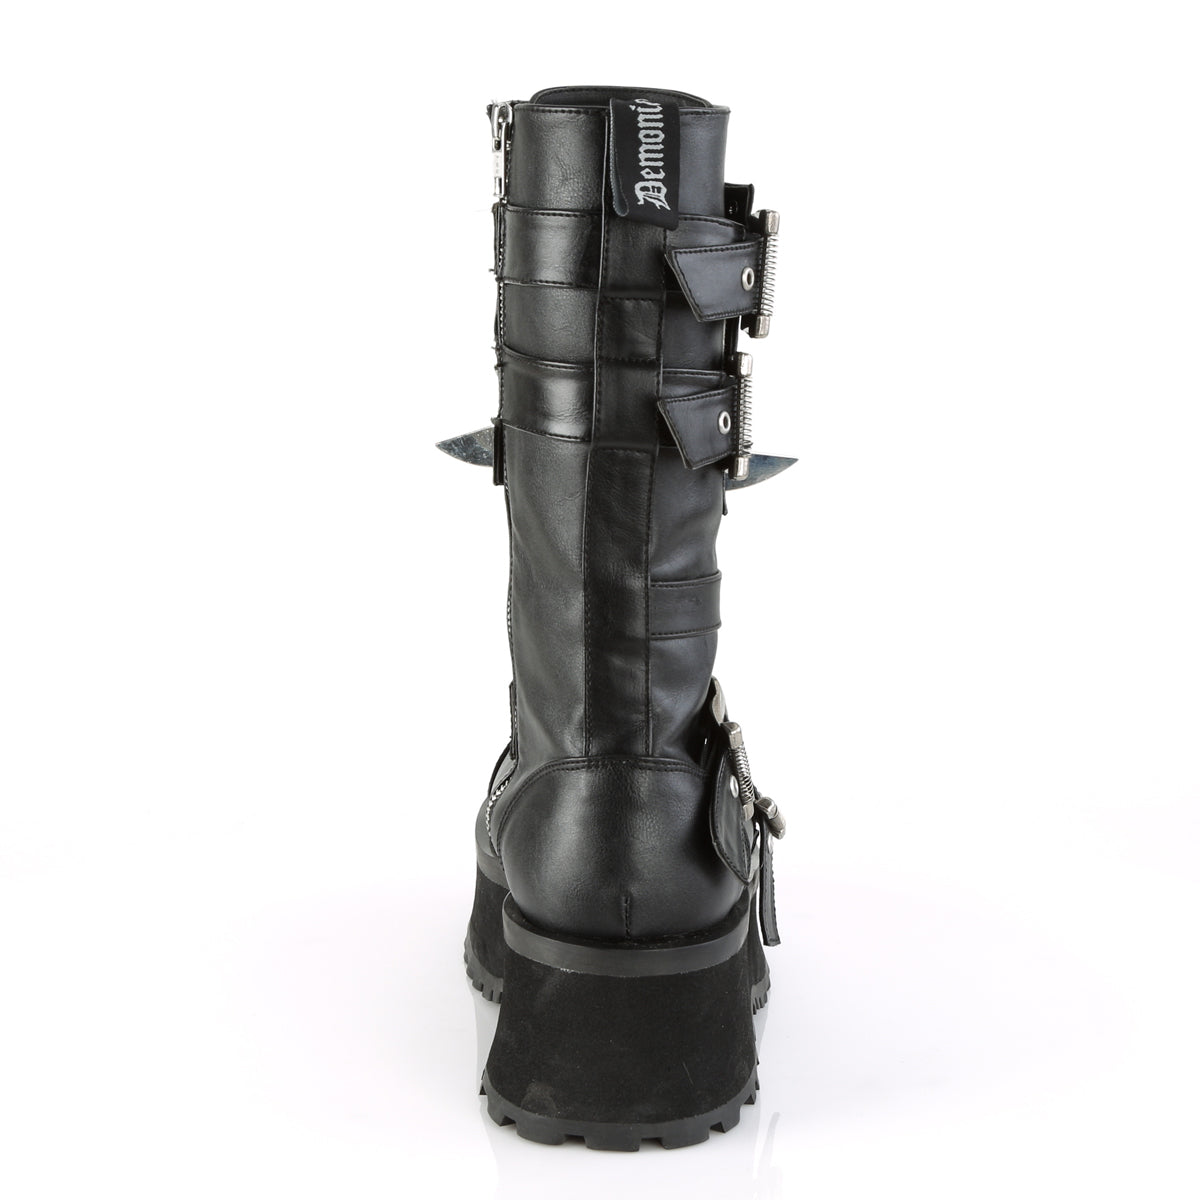 GRAVEDIGGER-250 Black Vegan Leather Mid-Calf Boot Demonia